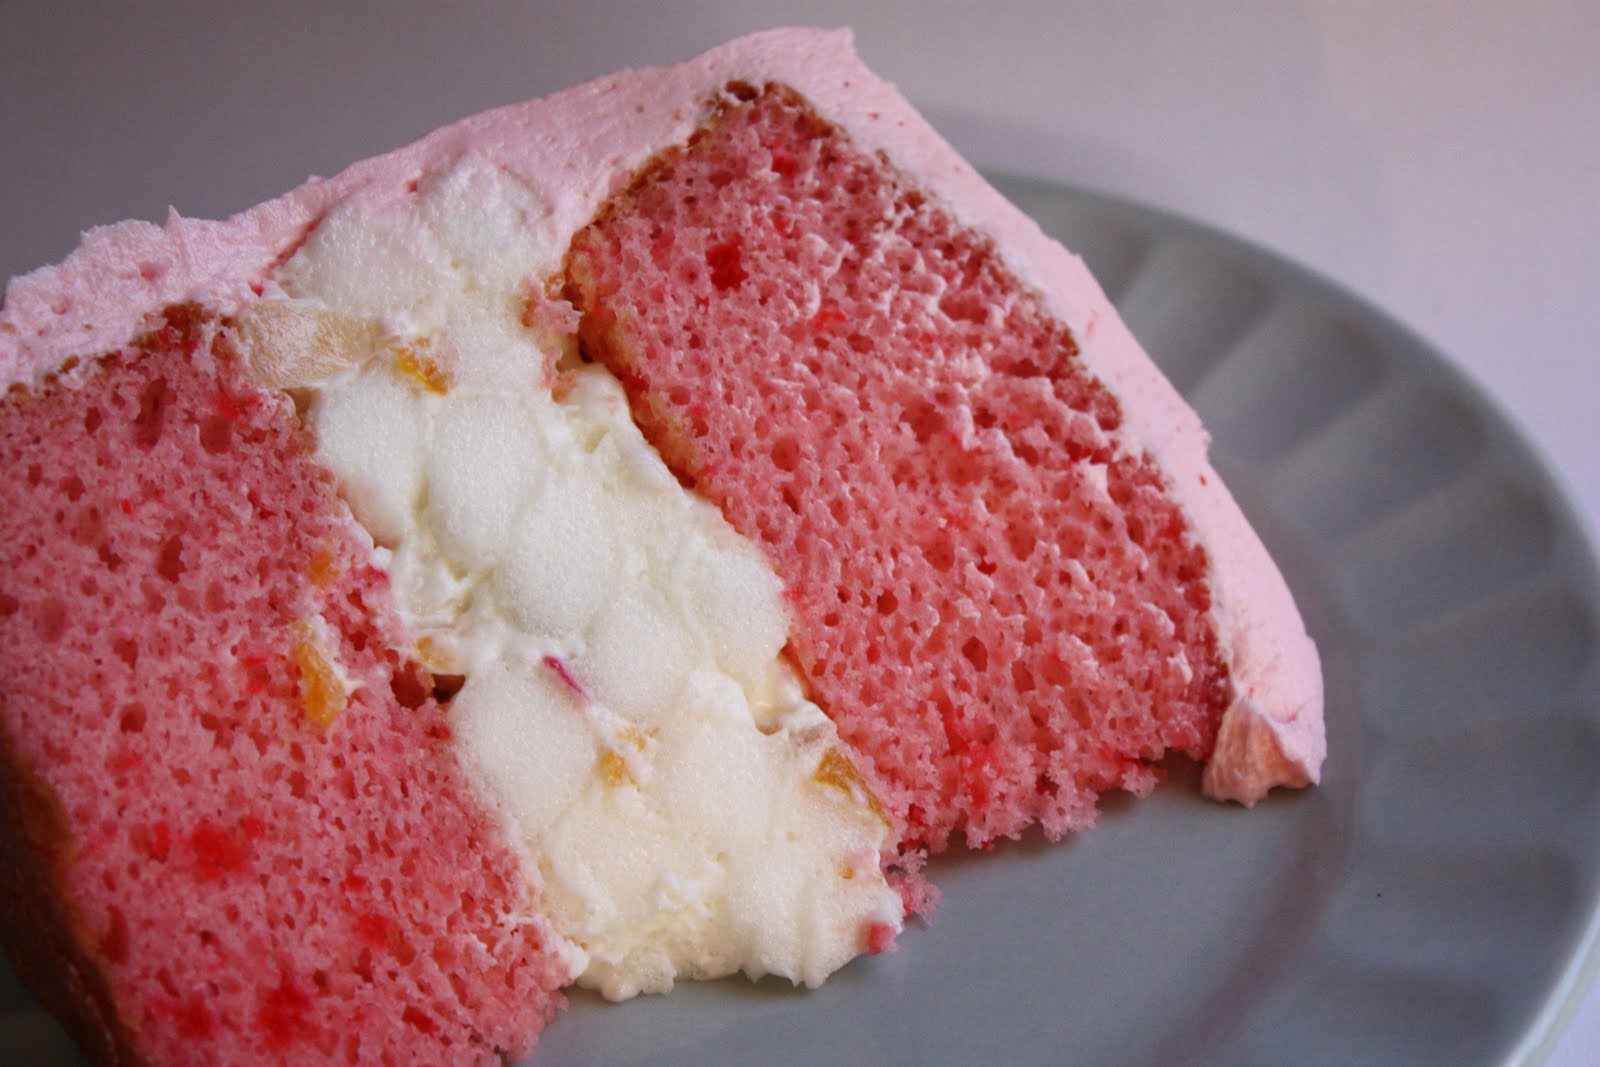 http://1.bp.blogspot.com/_KuaAihD4oVk/TMGtjBSpDAI/AAAAAAAAOJ0/YHk9Gvoe_6g/s1600/pink-ribbon-cake-slice.jpg